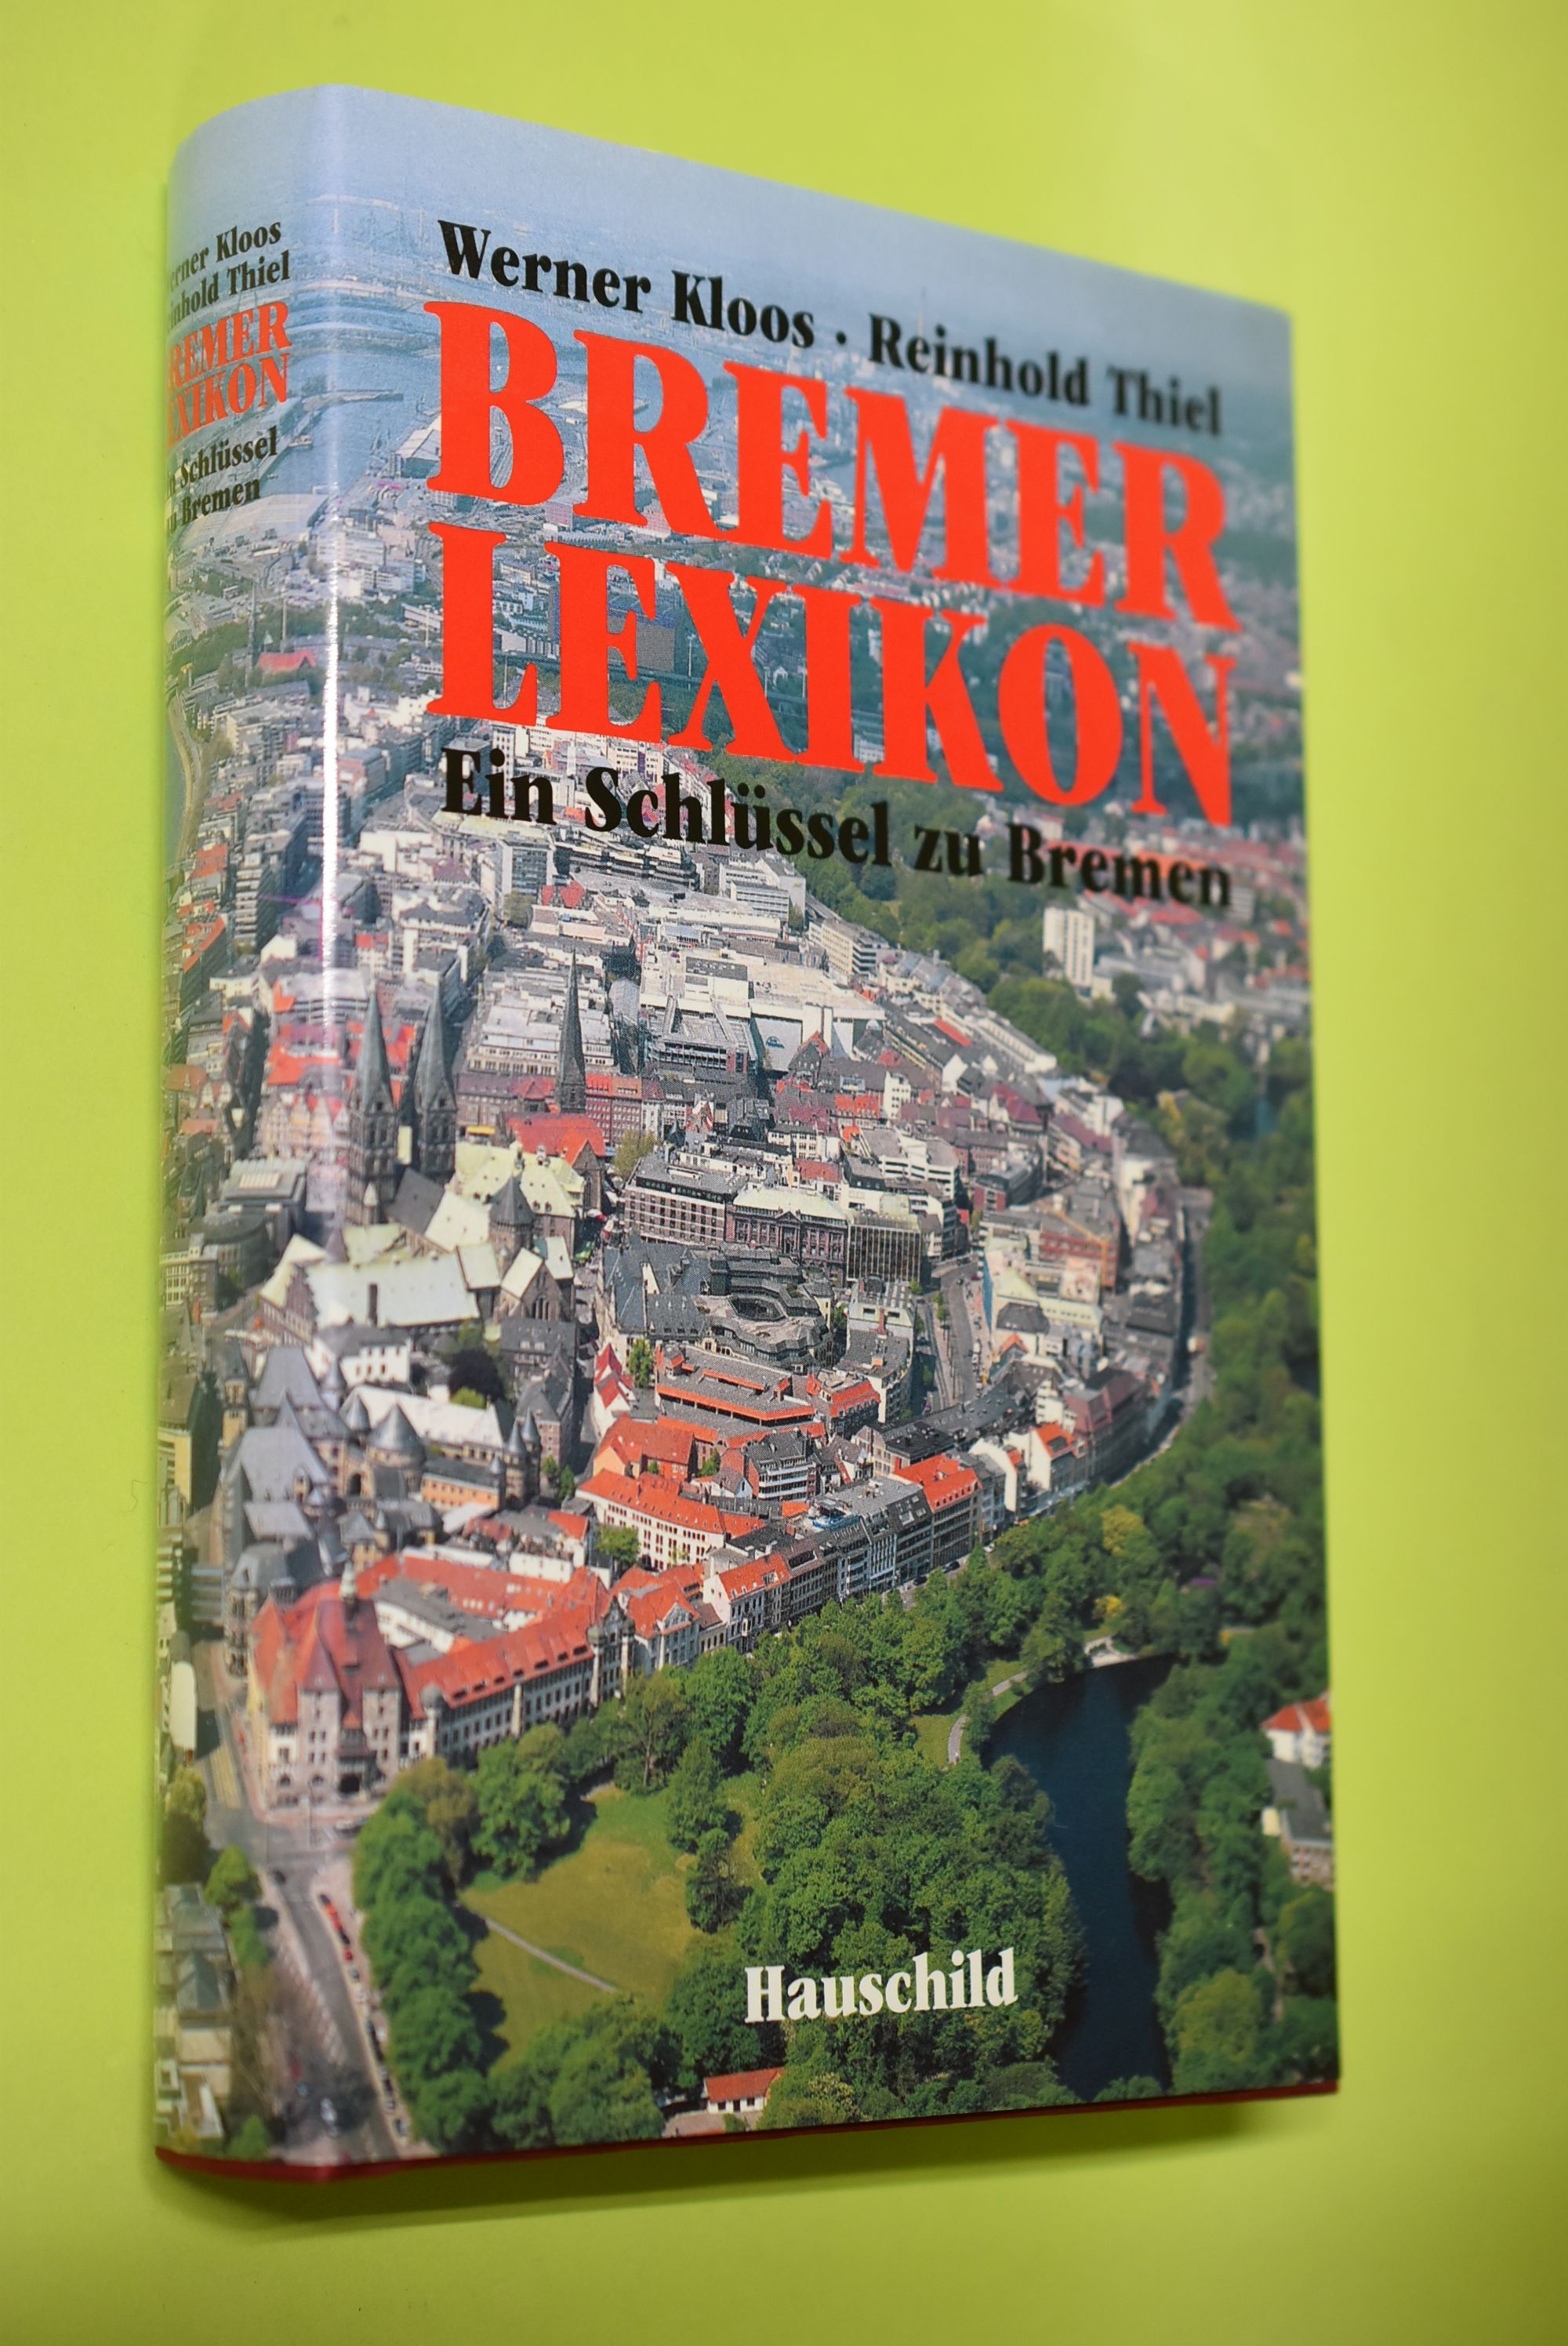 Bremer Lexikon : ein Schlüssel zu Bremen. Werner Kloos; Reinhold Thiel - Kloos, Werner und Reinhold Thiel